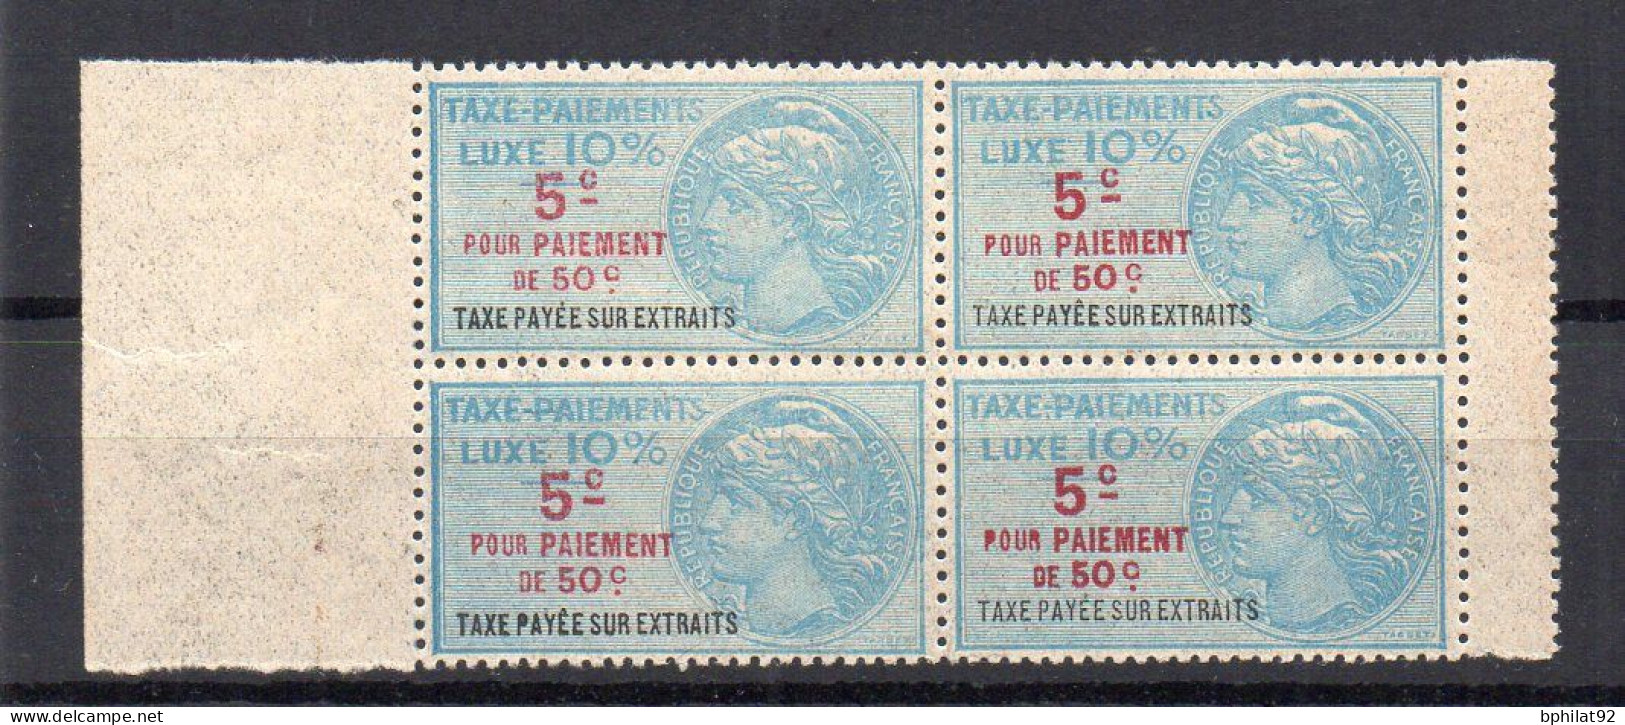 !!! FISCAUX, TAXE DE LUXE BLOC DE 4 N°35 NEUF ** - Stamps